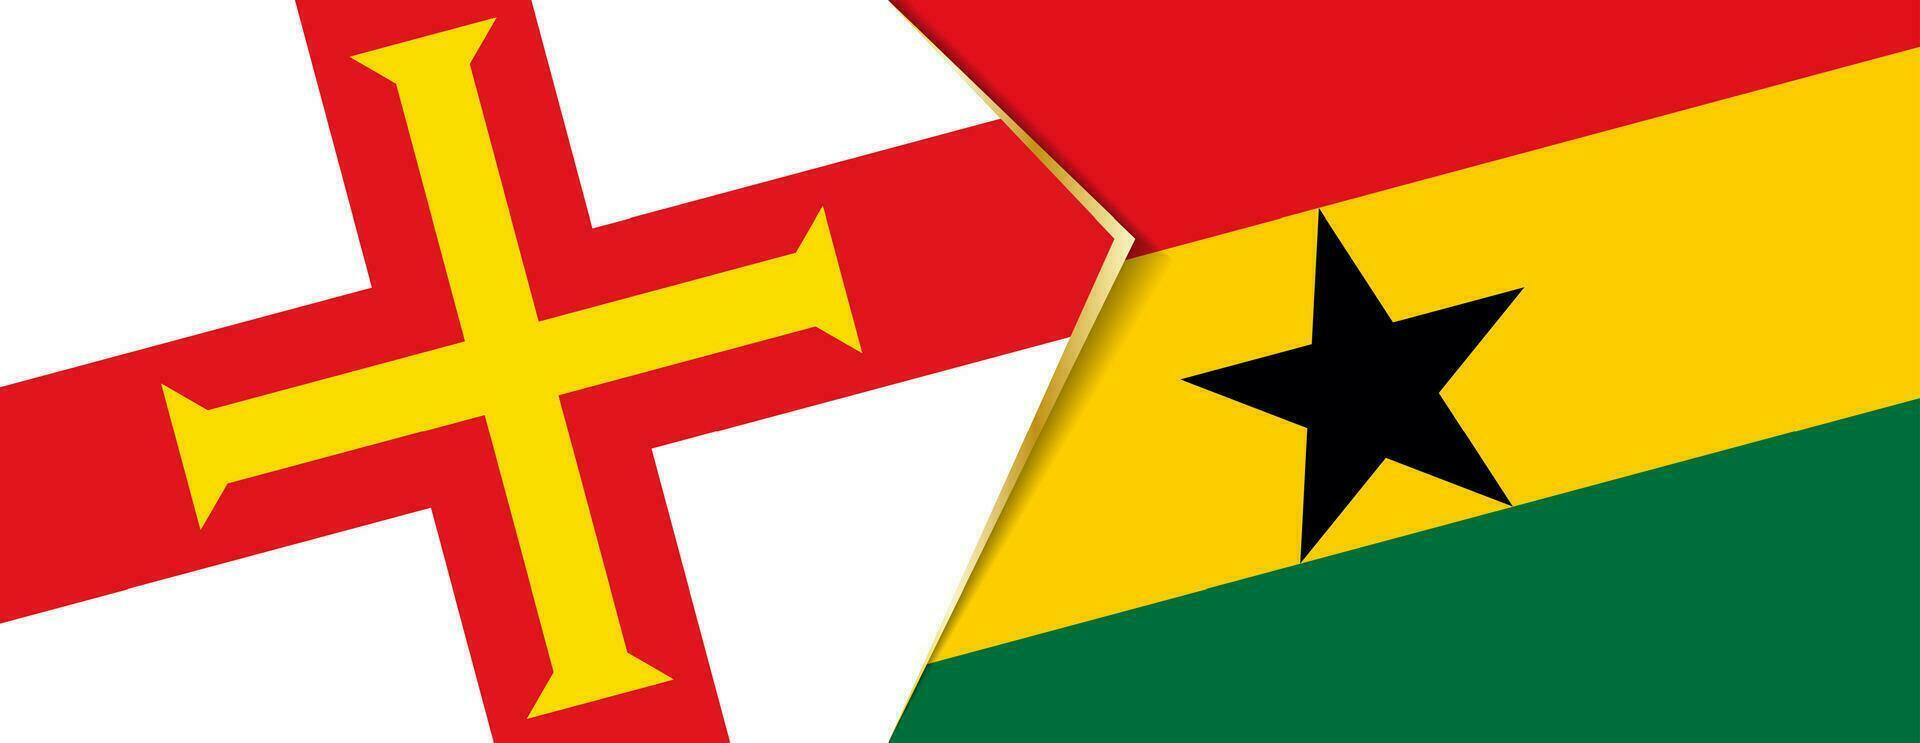 guernsey y Ghana banderas, dos vector banderas